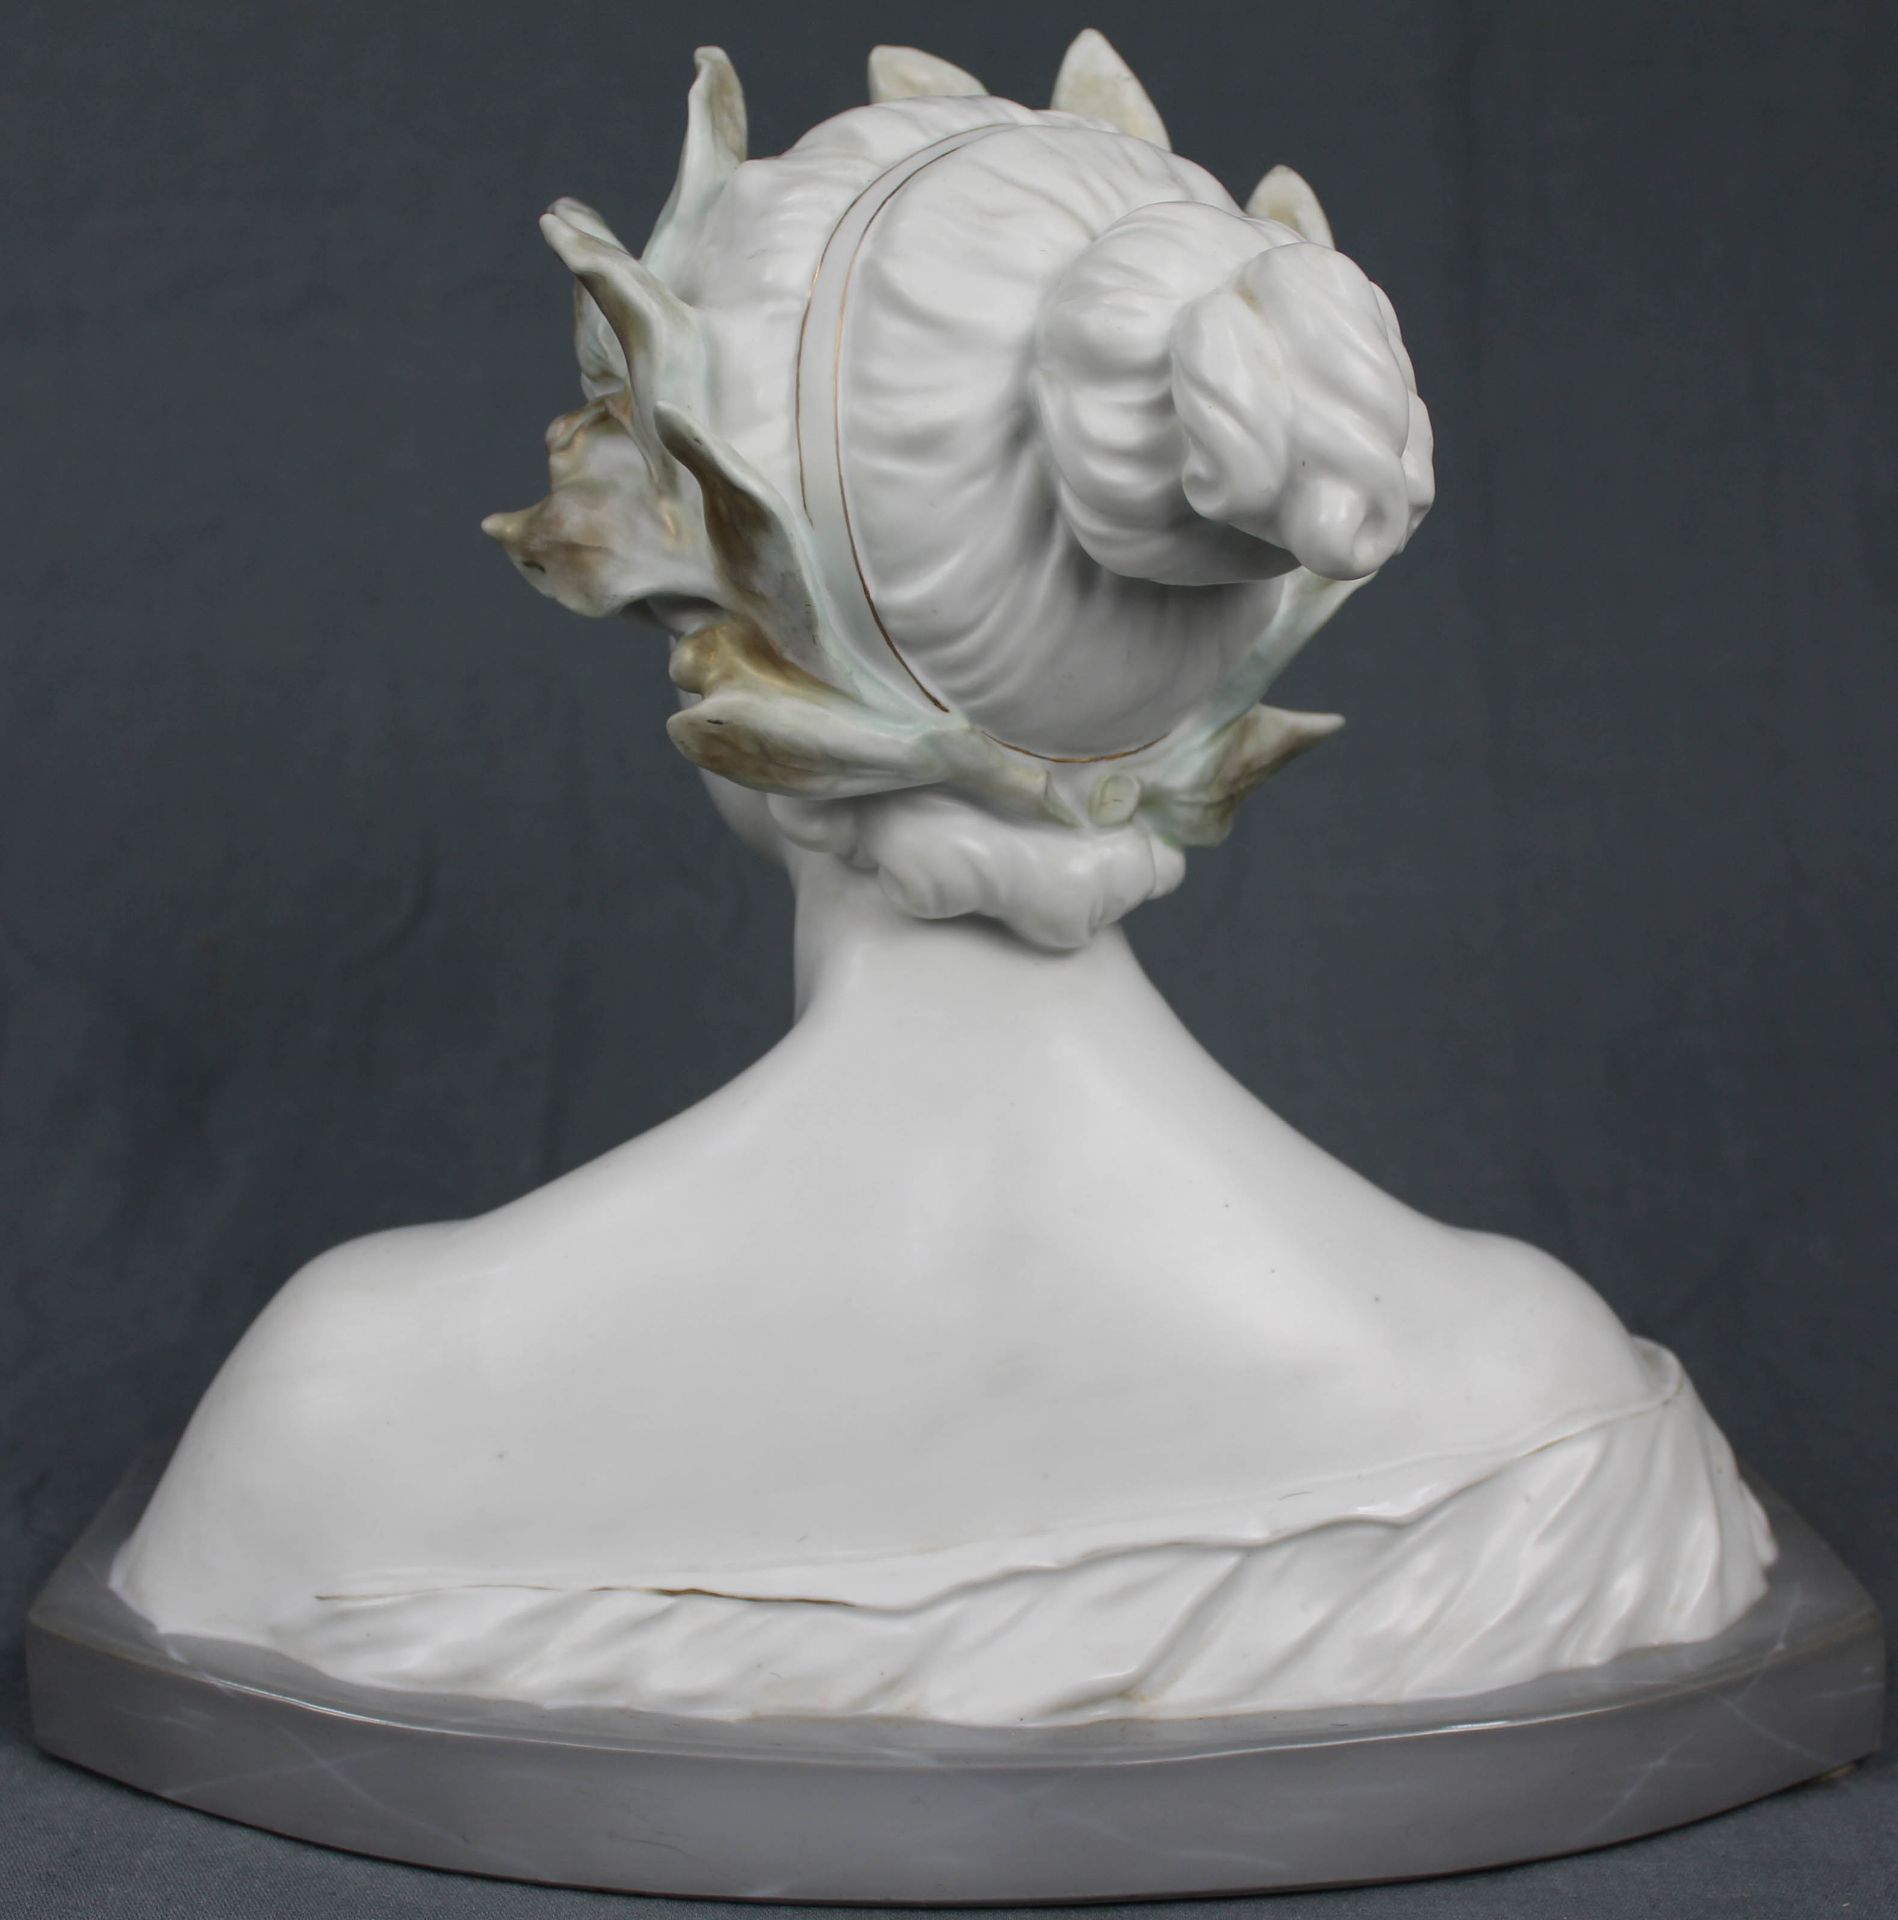 Porcelain bust of Fauna. Art Nouveau.26 cm high.Porzellan Büste der Fauna. Jugendstil.26 cm hoch. - Bild 3 aus 6